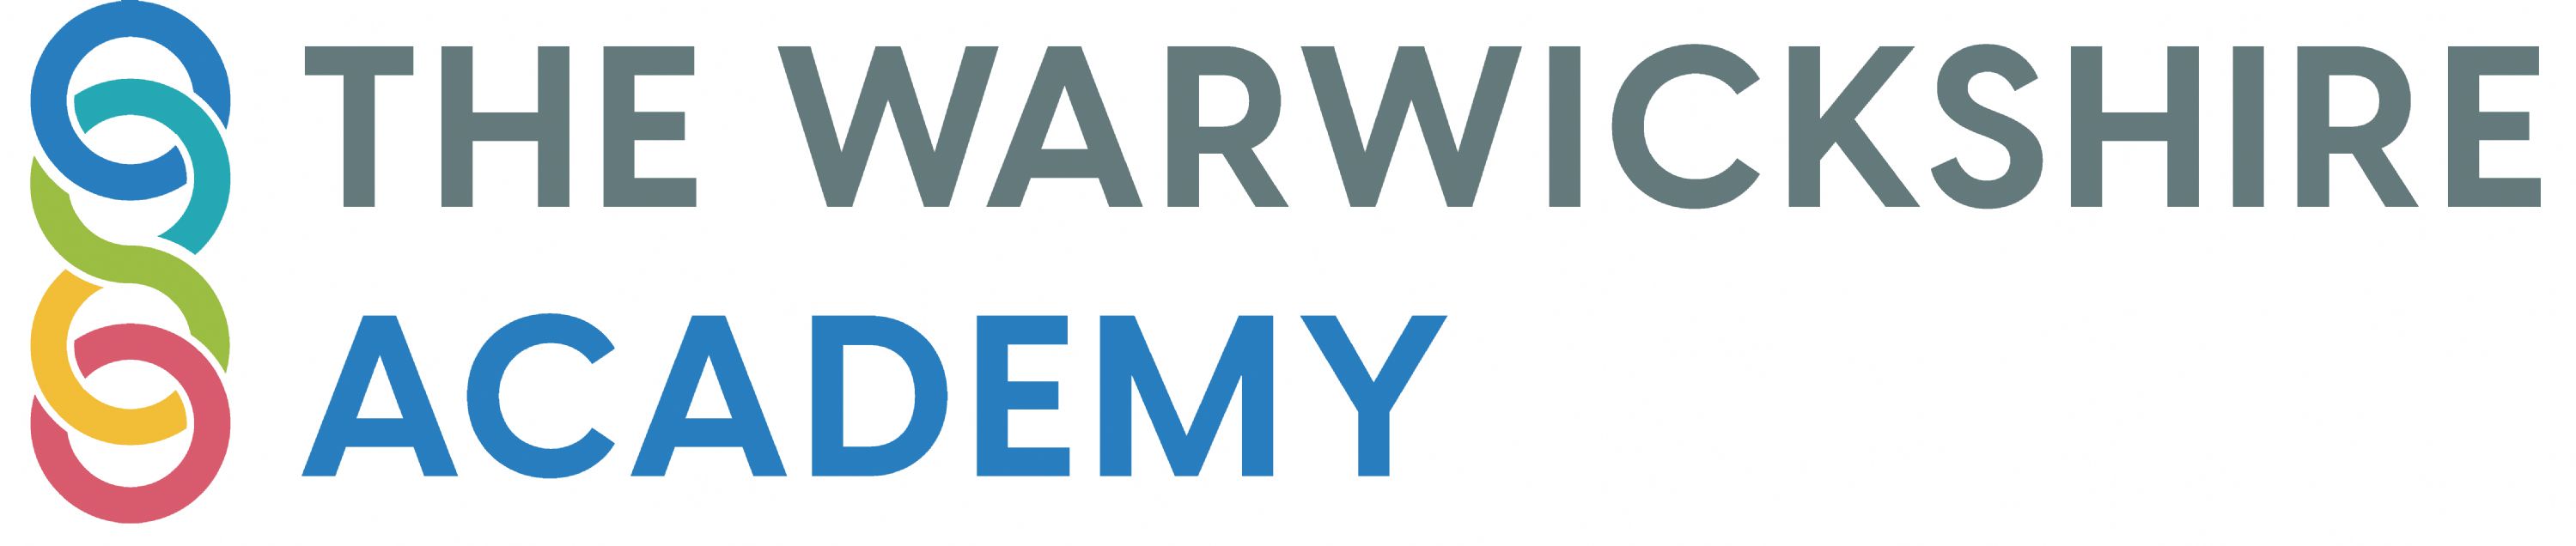 The Warwickshire Academy logo